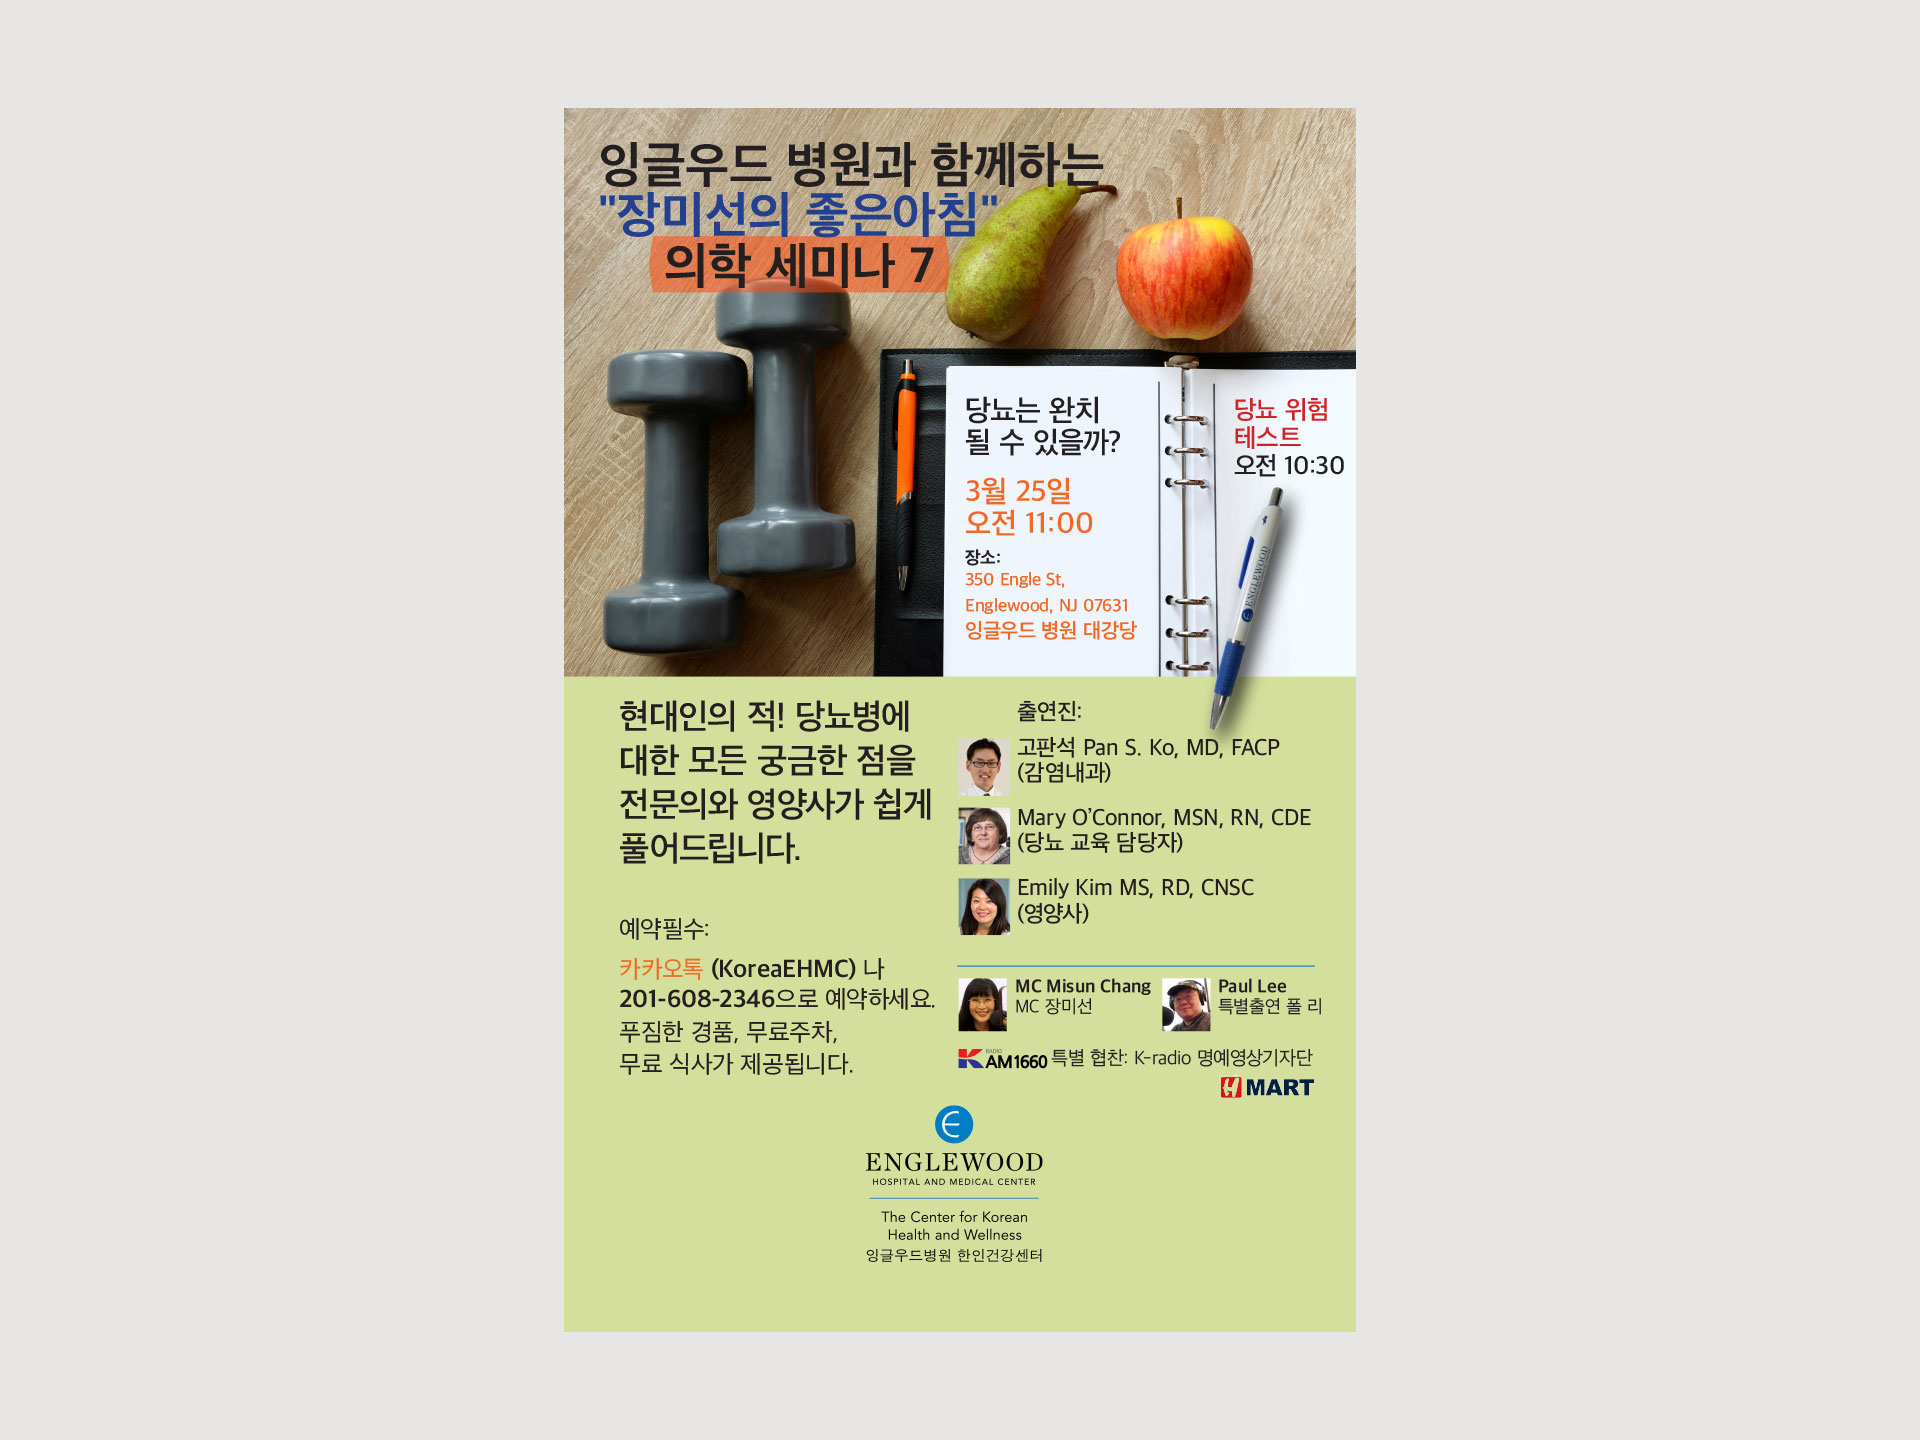 Korean Center event 7